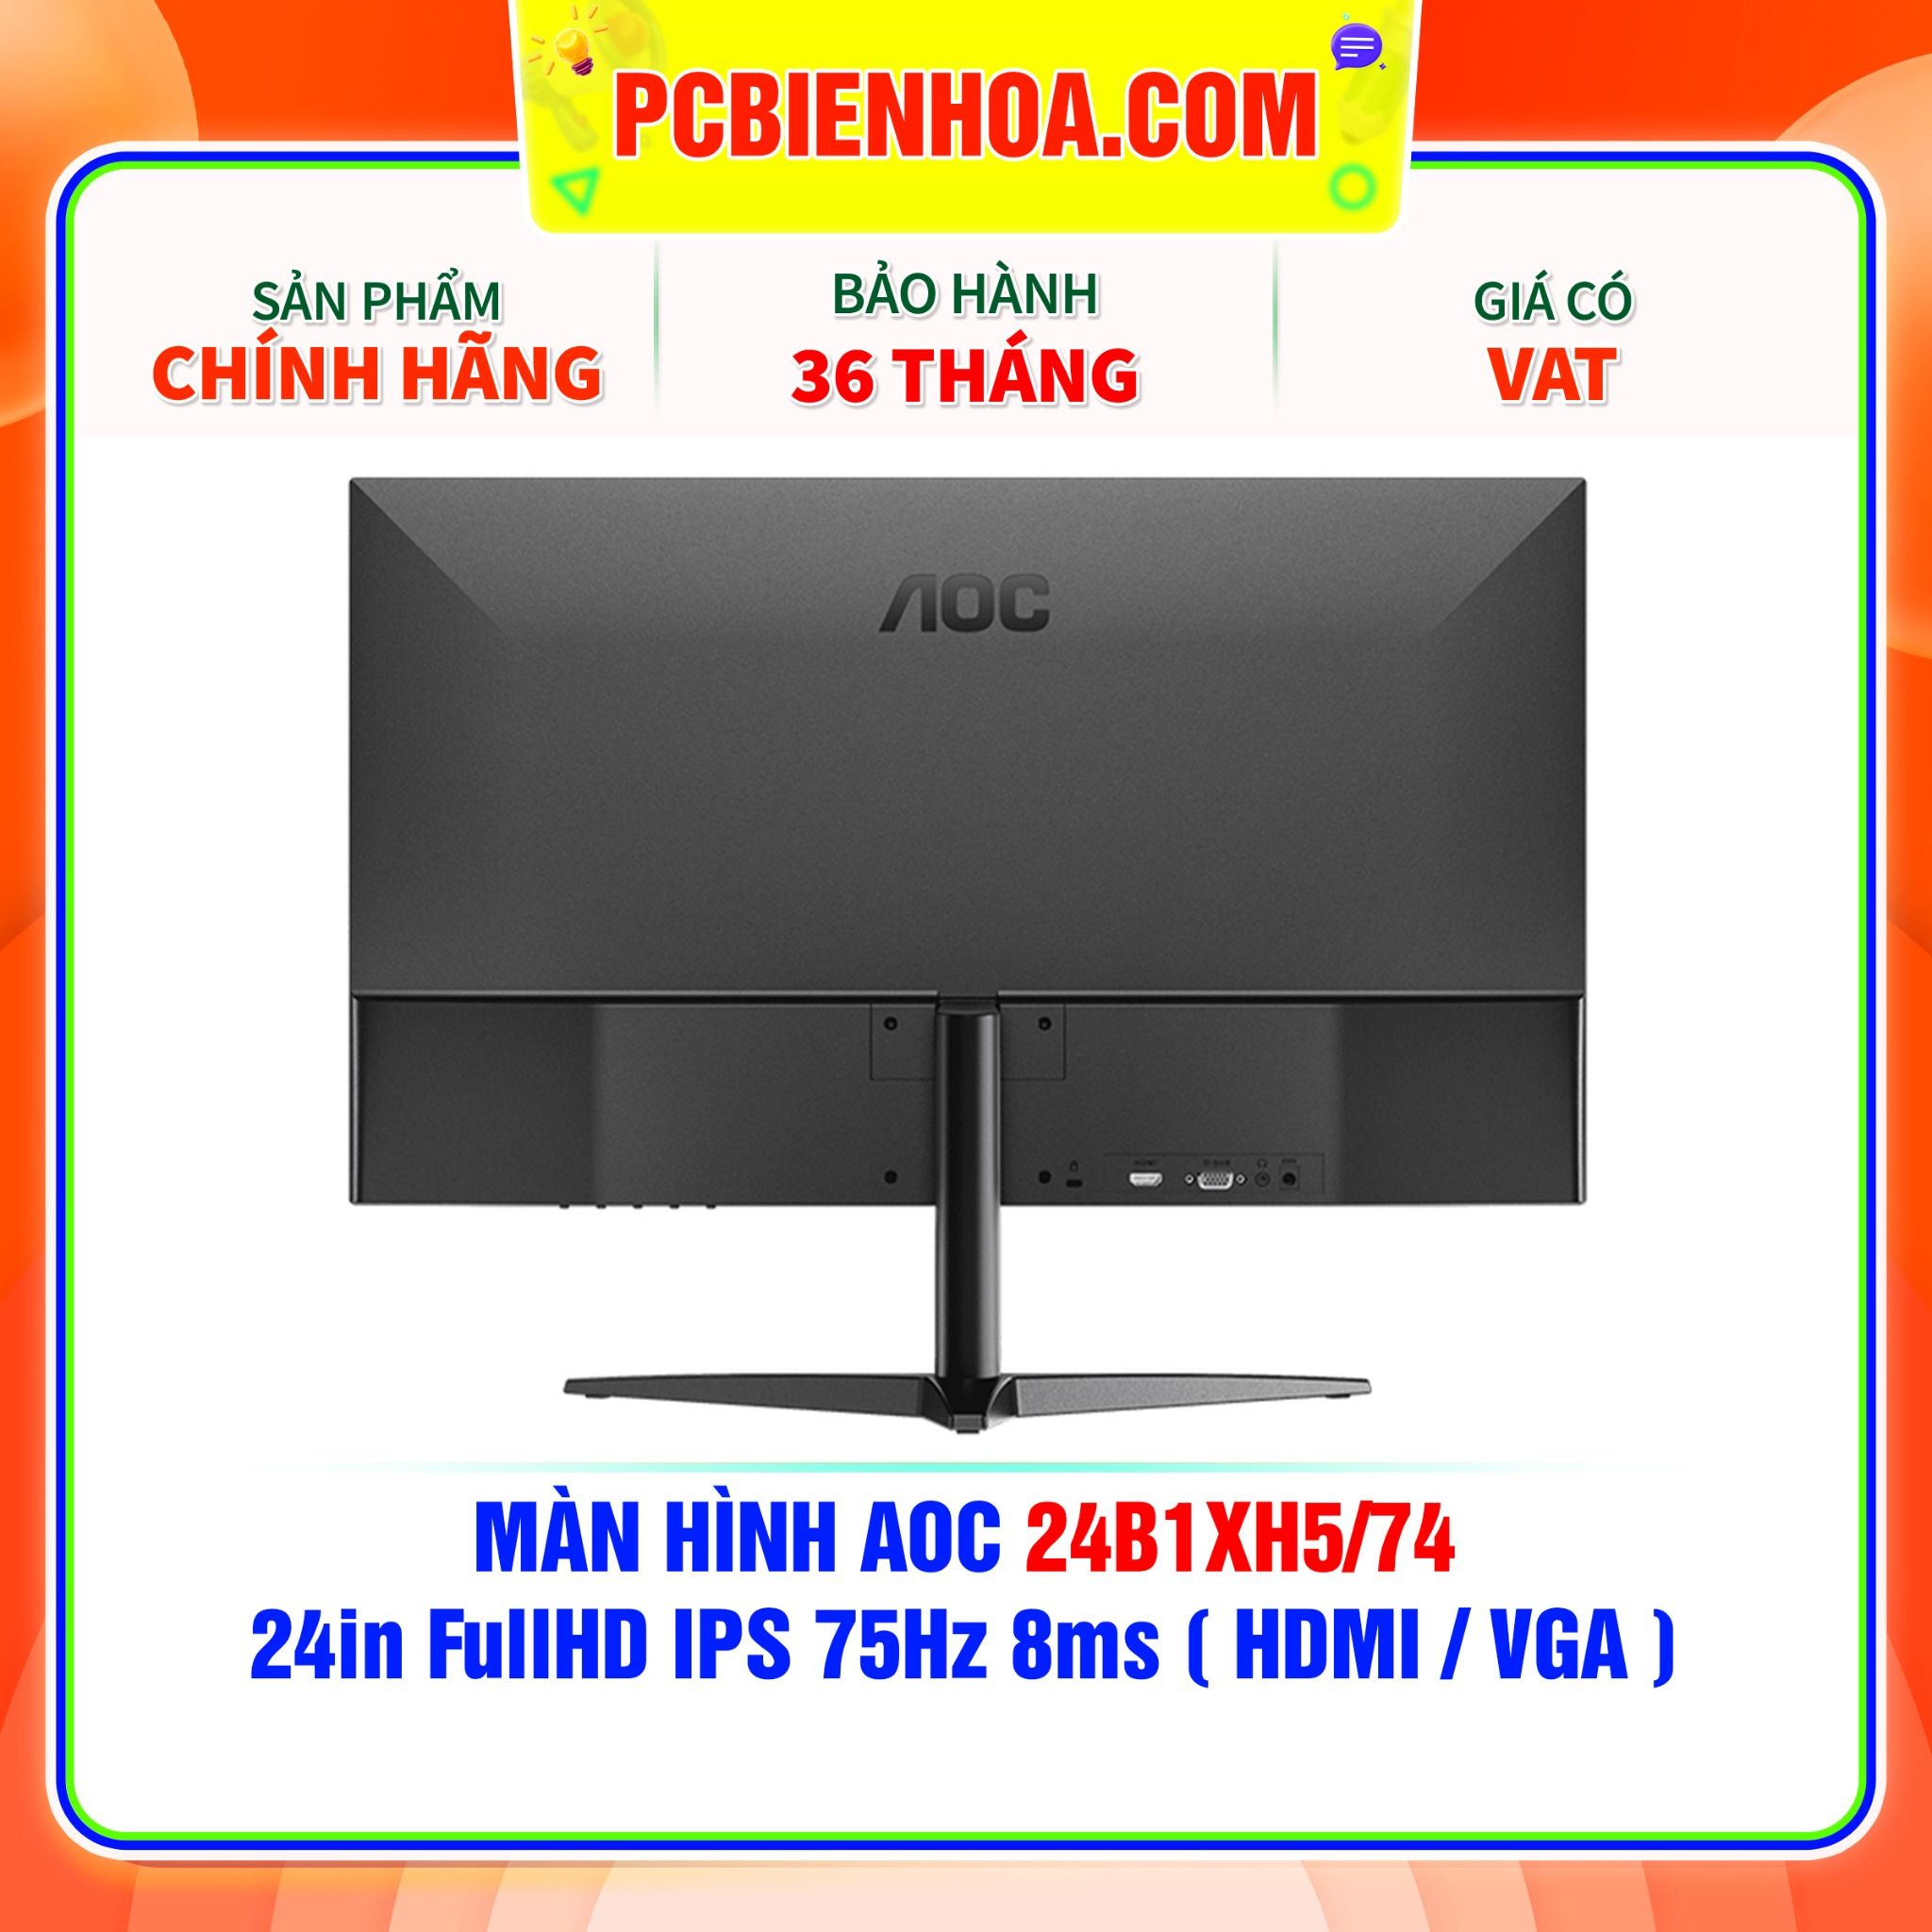  MÀN HÌNH AOC 24B1XH5/74 24in FullHD IPS 75Hz 8ms ( HDMI / VGA ) 